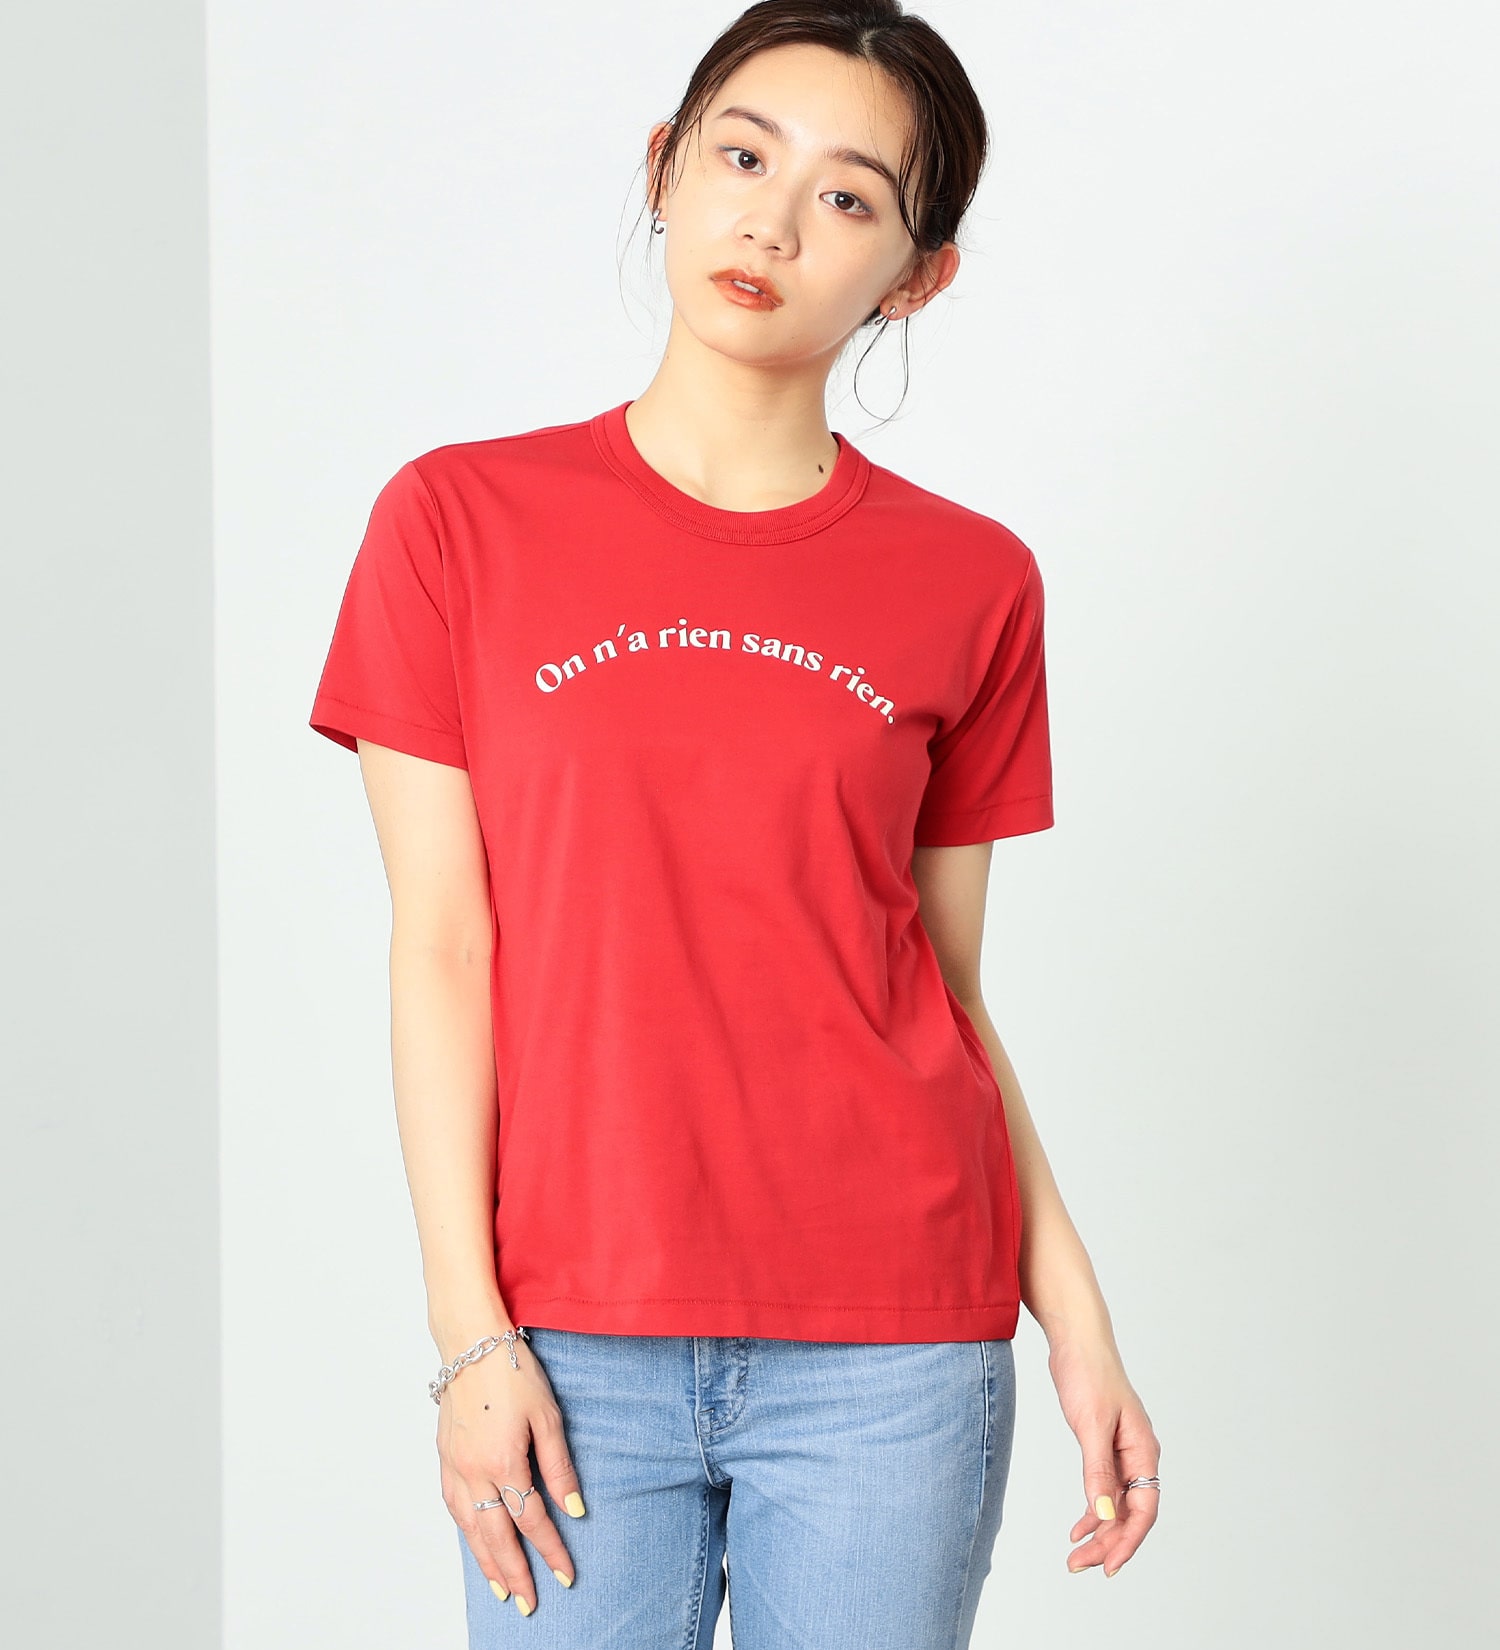 SOMETHING(サムシング)のSOMETHING フレンチメッセージ半袖Tシャツ|トップス/Tシャツ/カットソー/レディース|レッド